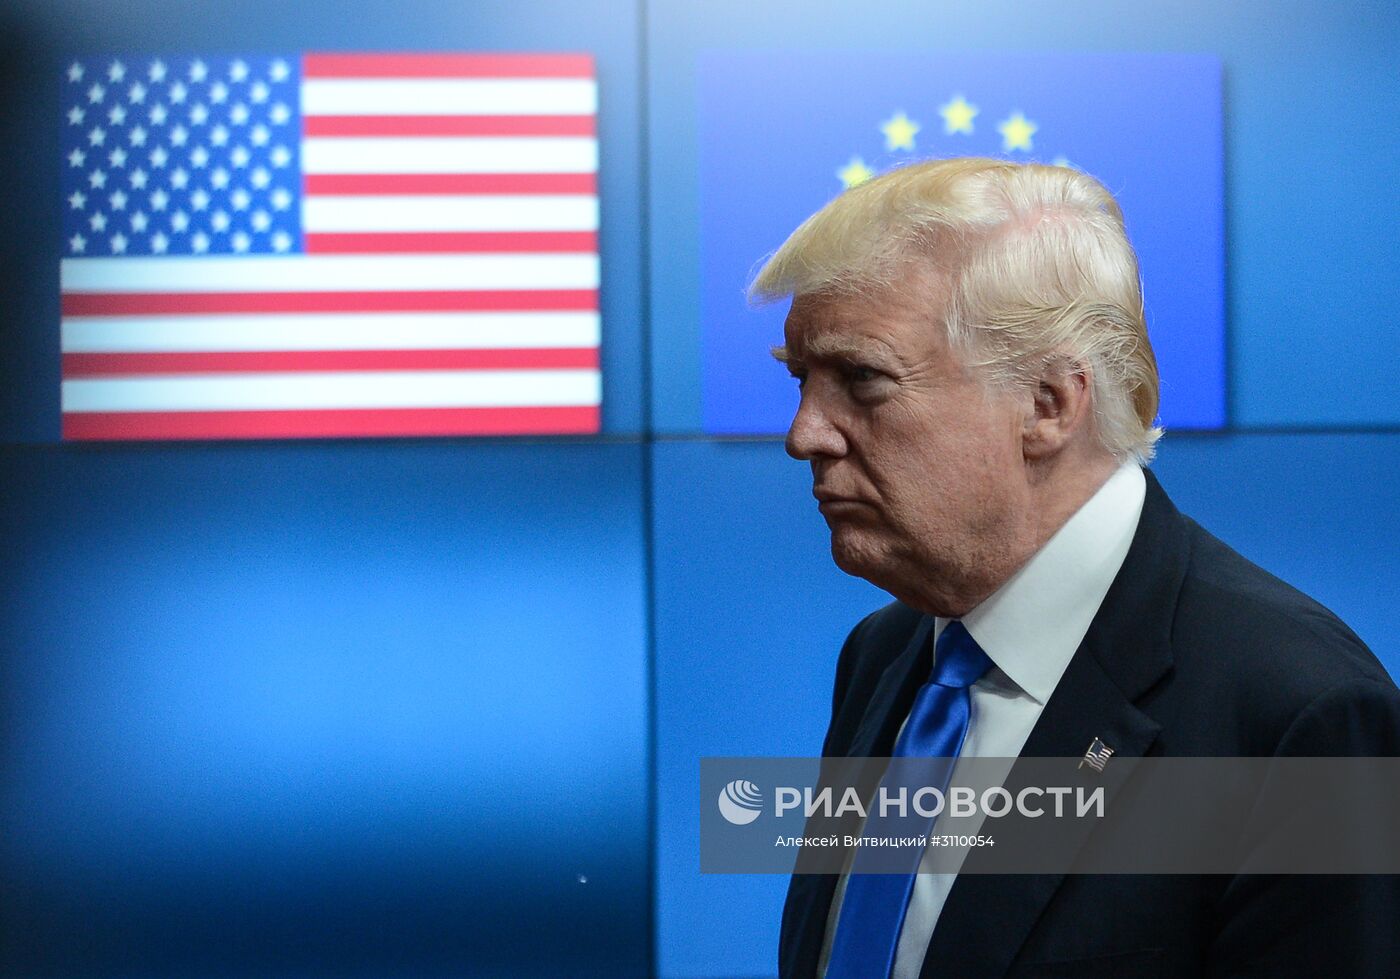 Президент США Дональд Трамп встретился с лидерами ЕС в Брюсселе